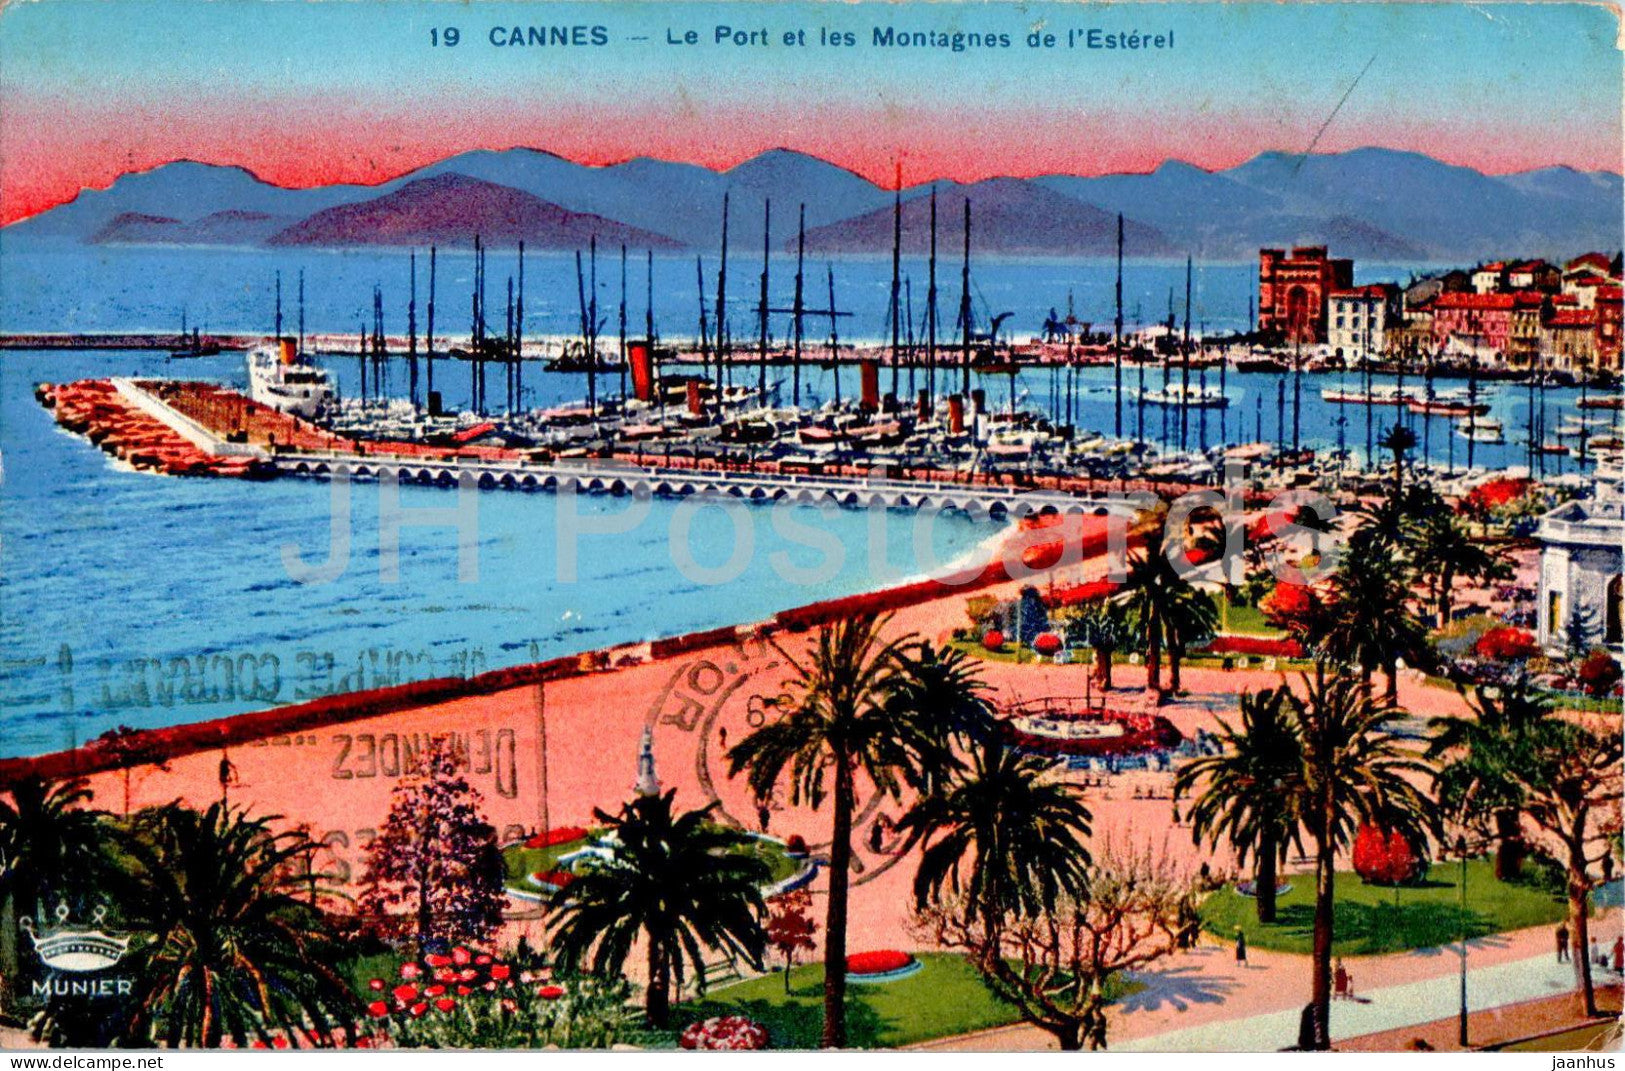 Cannes - Le Port et les Montagnes de l'Esterel - 19 - old postcard - 1939 - France - used - JH Postcards